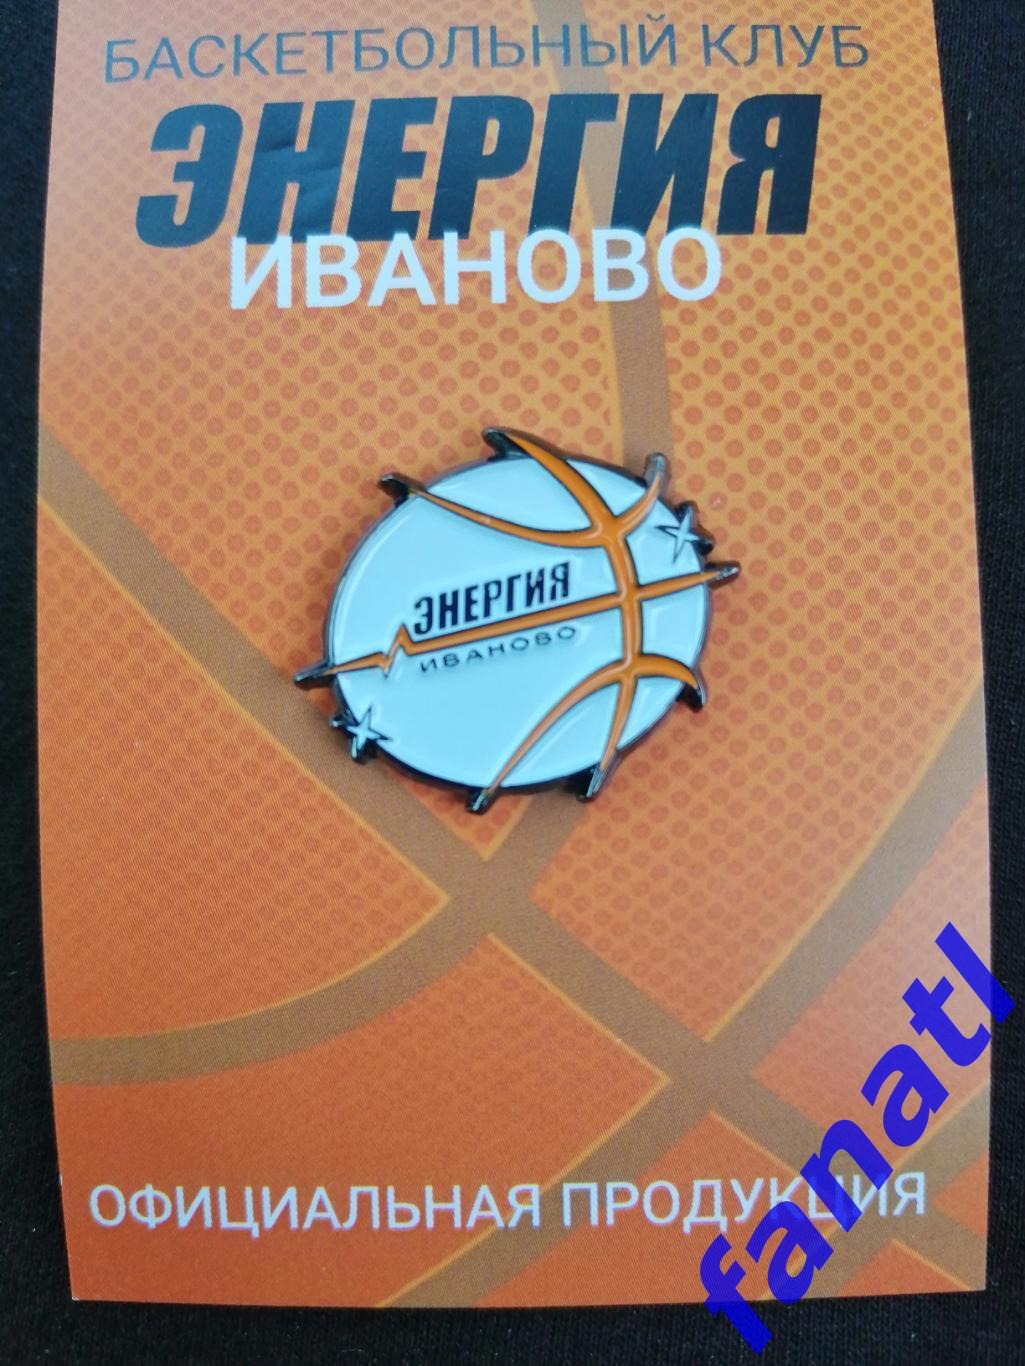 Официальный знак. Женский баскетбольный клуб Энергия (Иваново)